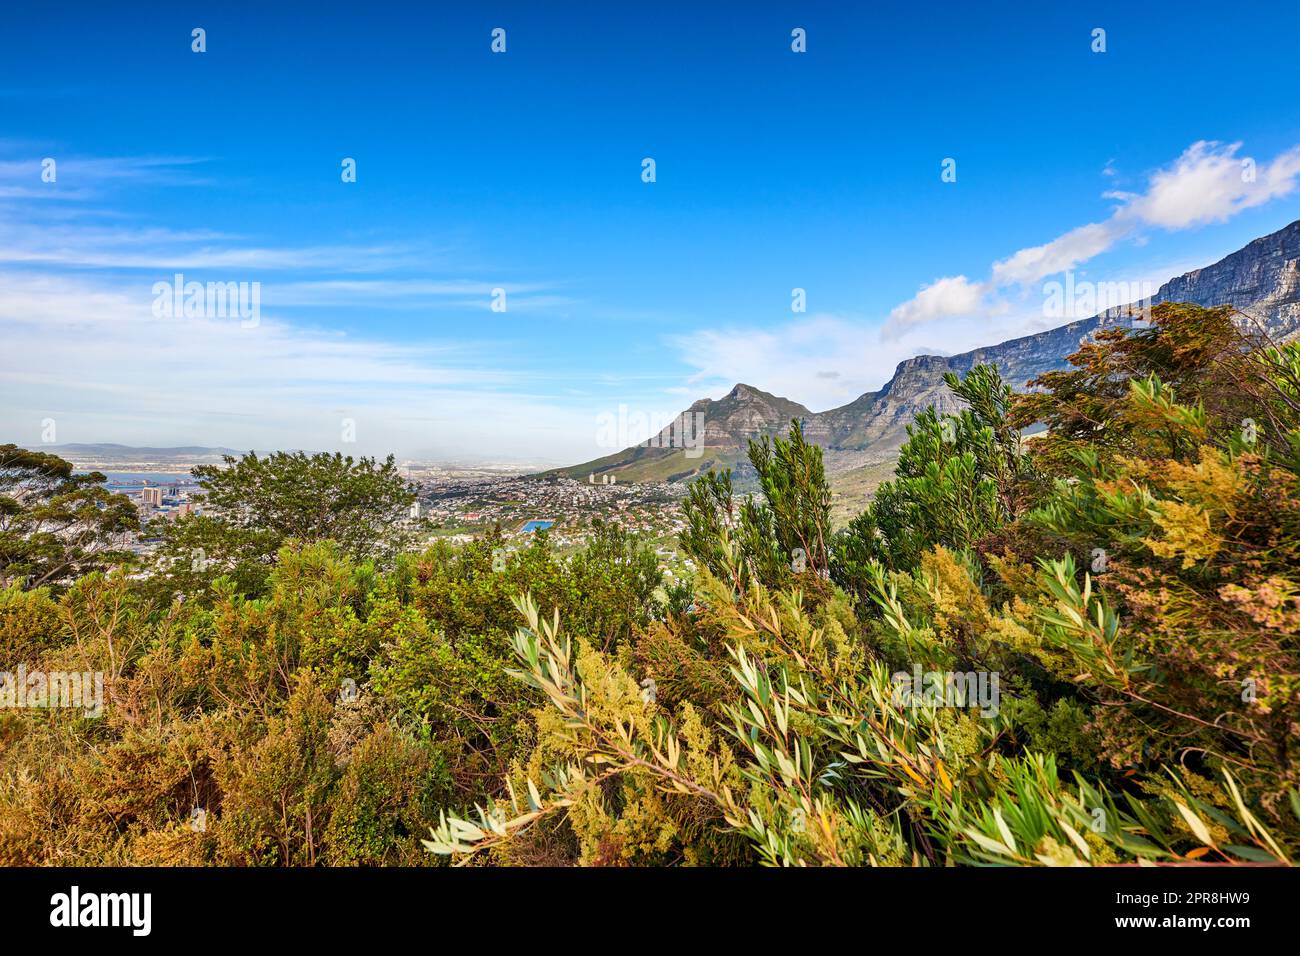 Belle vue sur les plantes vertes avec un fond de montagne et de ciel bleu en Afrique du Sud, Cap occidental. Paysage pittoresque et tranquille de la flore dans un écosystème naturel non cultivé du Cap Banque D'Images